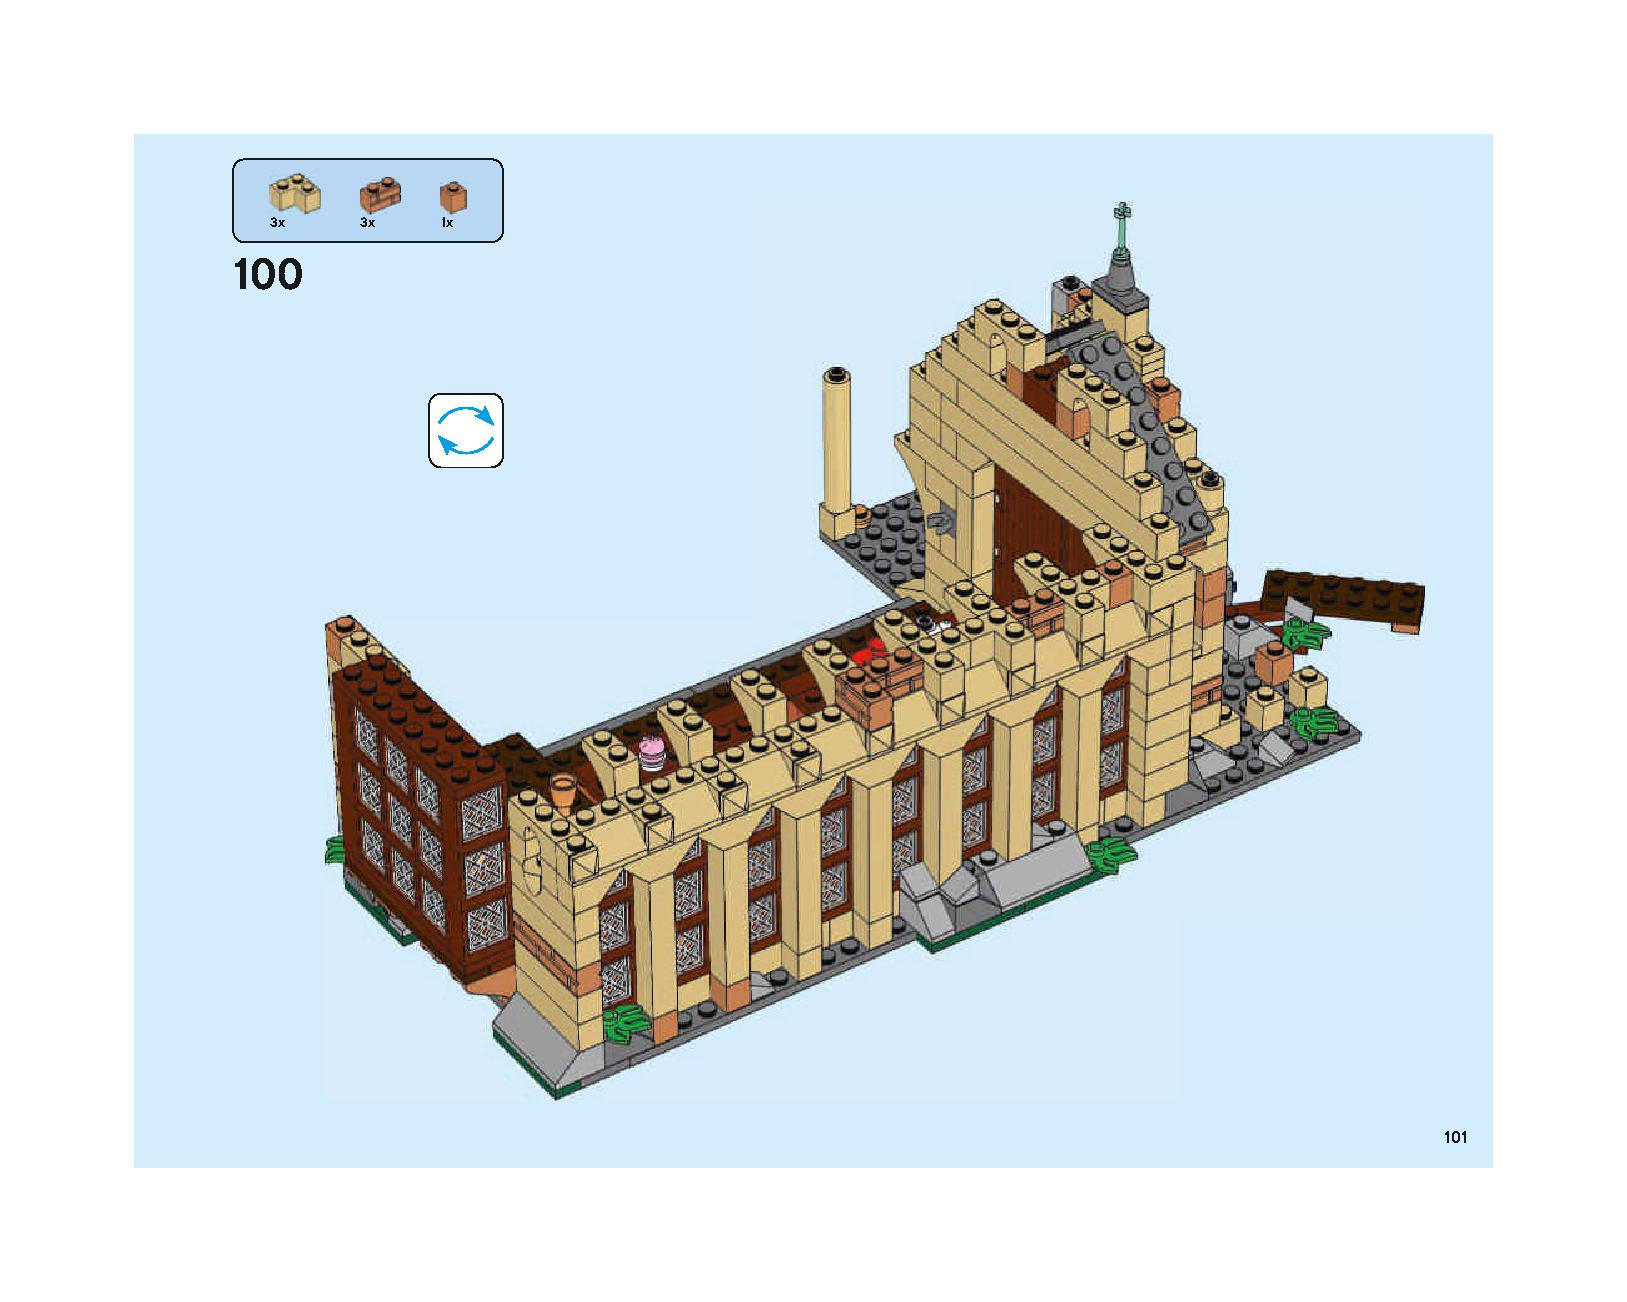 ホグワーツの大広間 75954 レゴの商品情報 レゴの説明書・組立方法 101 page